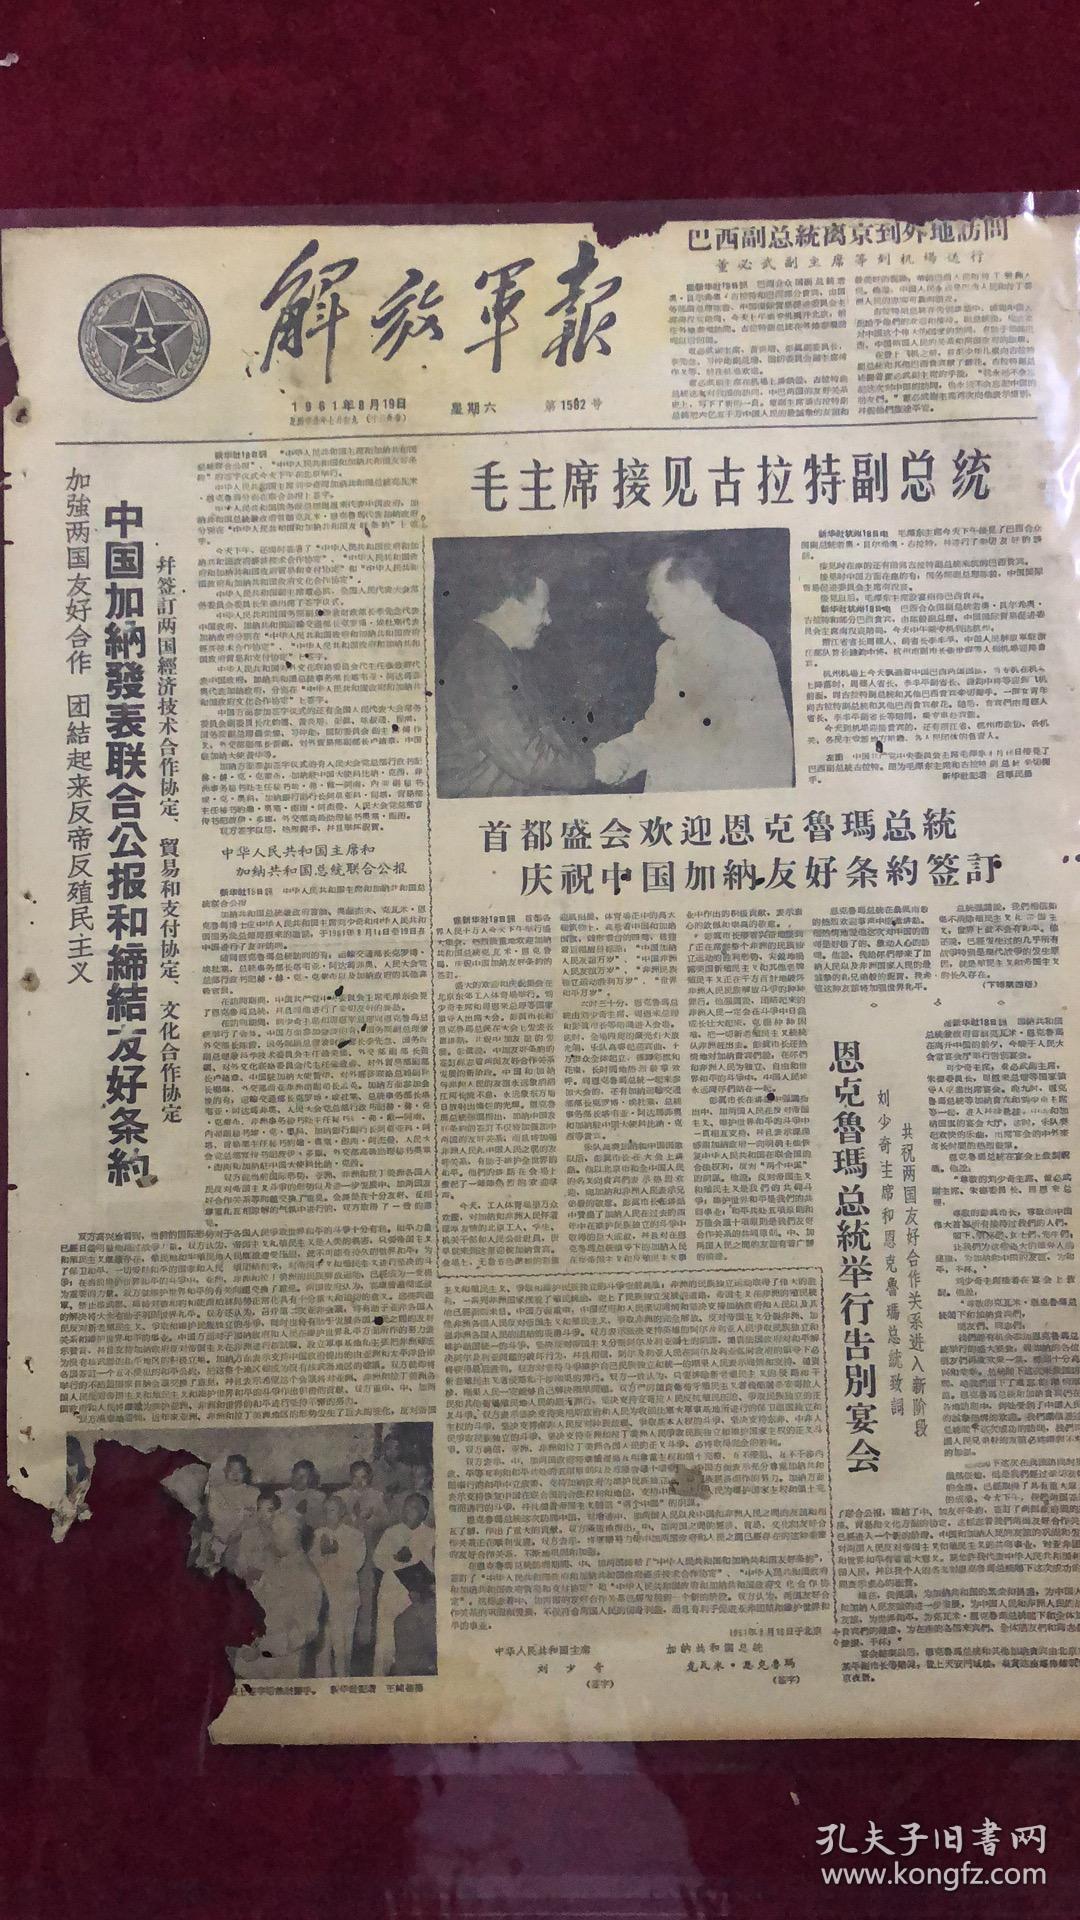 解放军报1961年8月19日（4开四版）
毛主席接见古拉特副总统。
中国加纳发表联合公报和缔结友好条约。